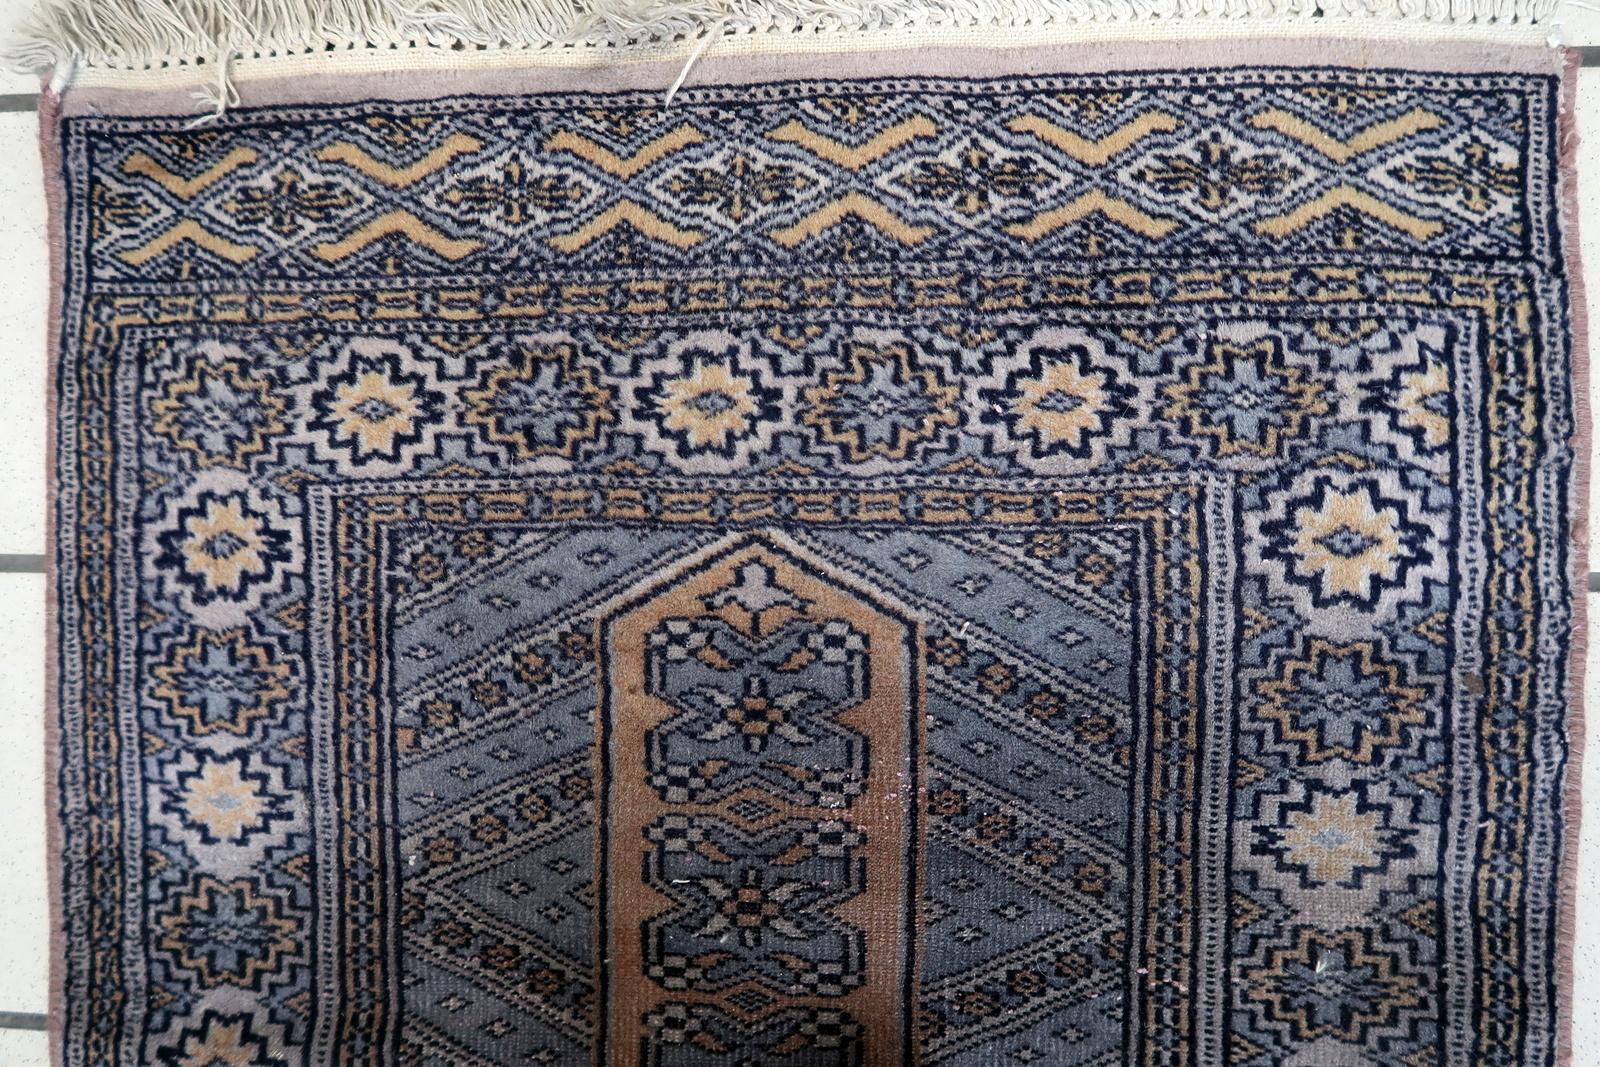 Handgefertigter Vintage-Buchara-Teppich aus Usbekistan:

Design und Handwerkskunst:
Dieser rechteckige Teppich aus den 1950er-Jahren zeigt den beständigen Charme traditioneller usbekischer Handwerkskunst.
Mit den Maßen 2' x 3,1' (bzw. 61cm x 96cm)